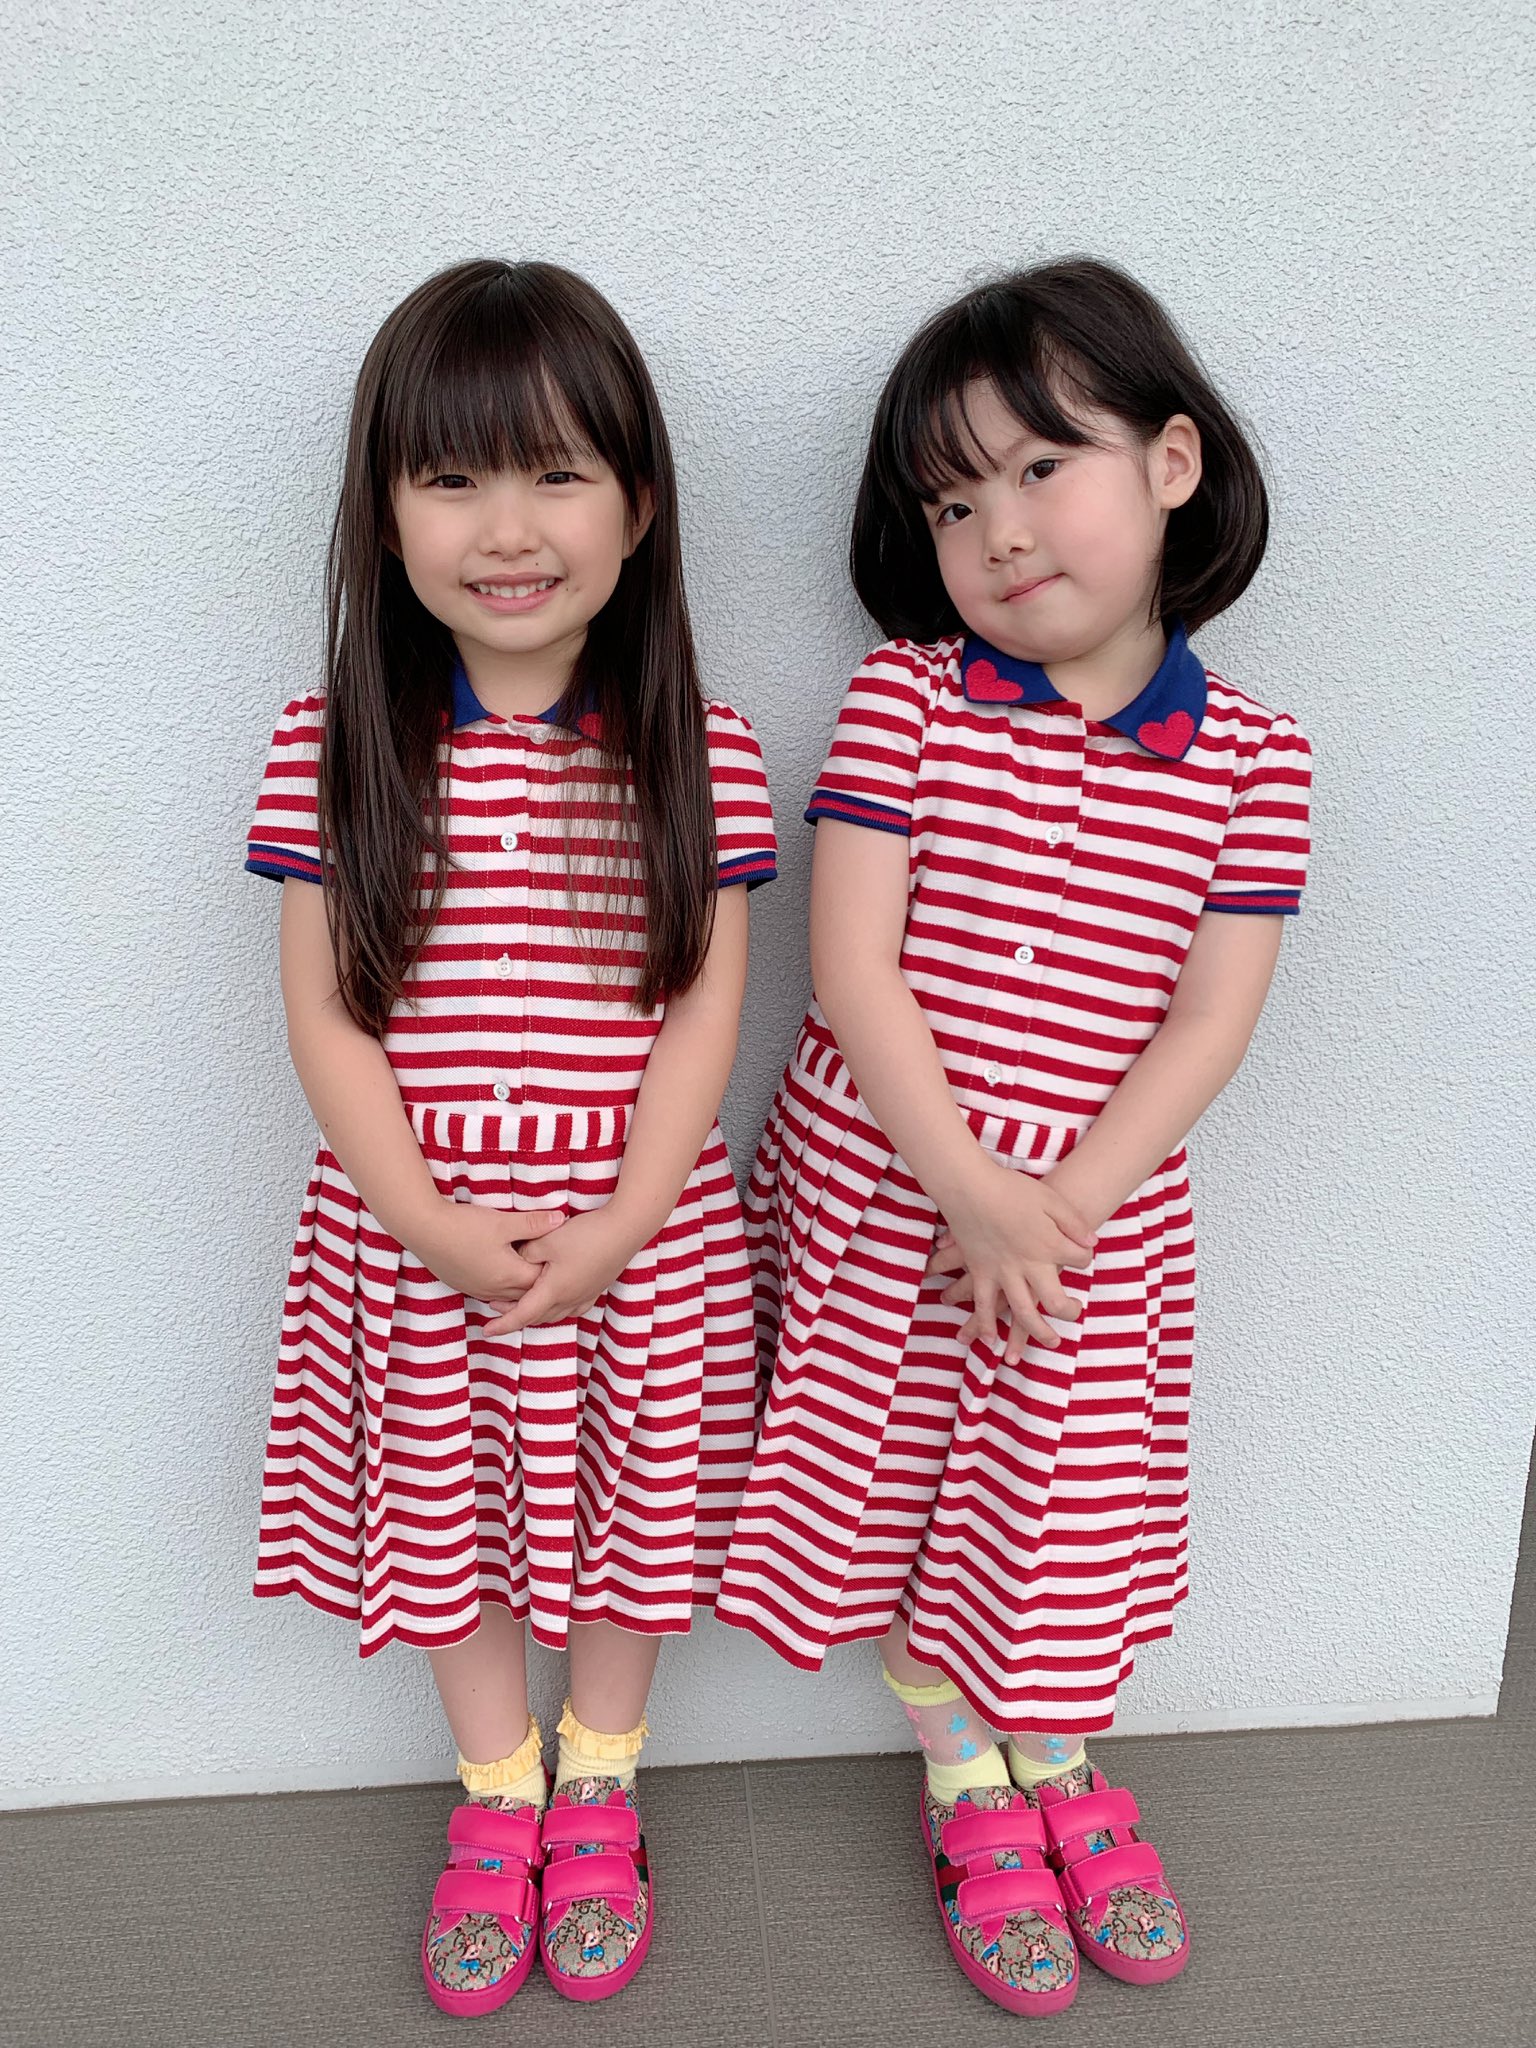 吉田沙保里 双子コーデ 超ー可愛い 二人とも気に入ってくれたみたいで良かったぁー やっぱり女の子は可愛い服がいっぱいあっていいね 双子コーデ グッチ ワンピース 靴 T Co 7z1pk218t8 Twitter